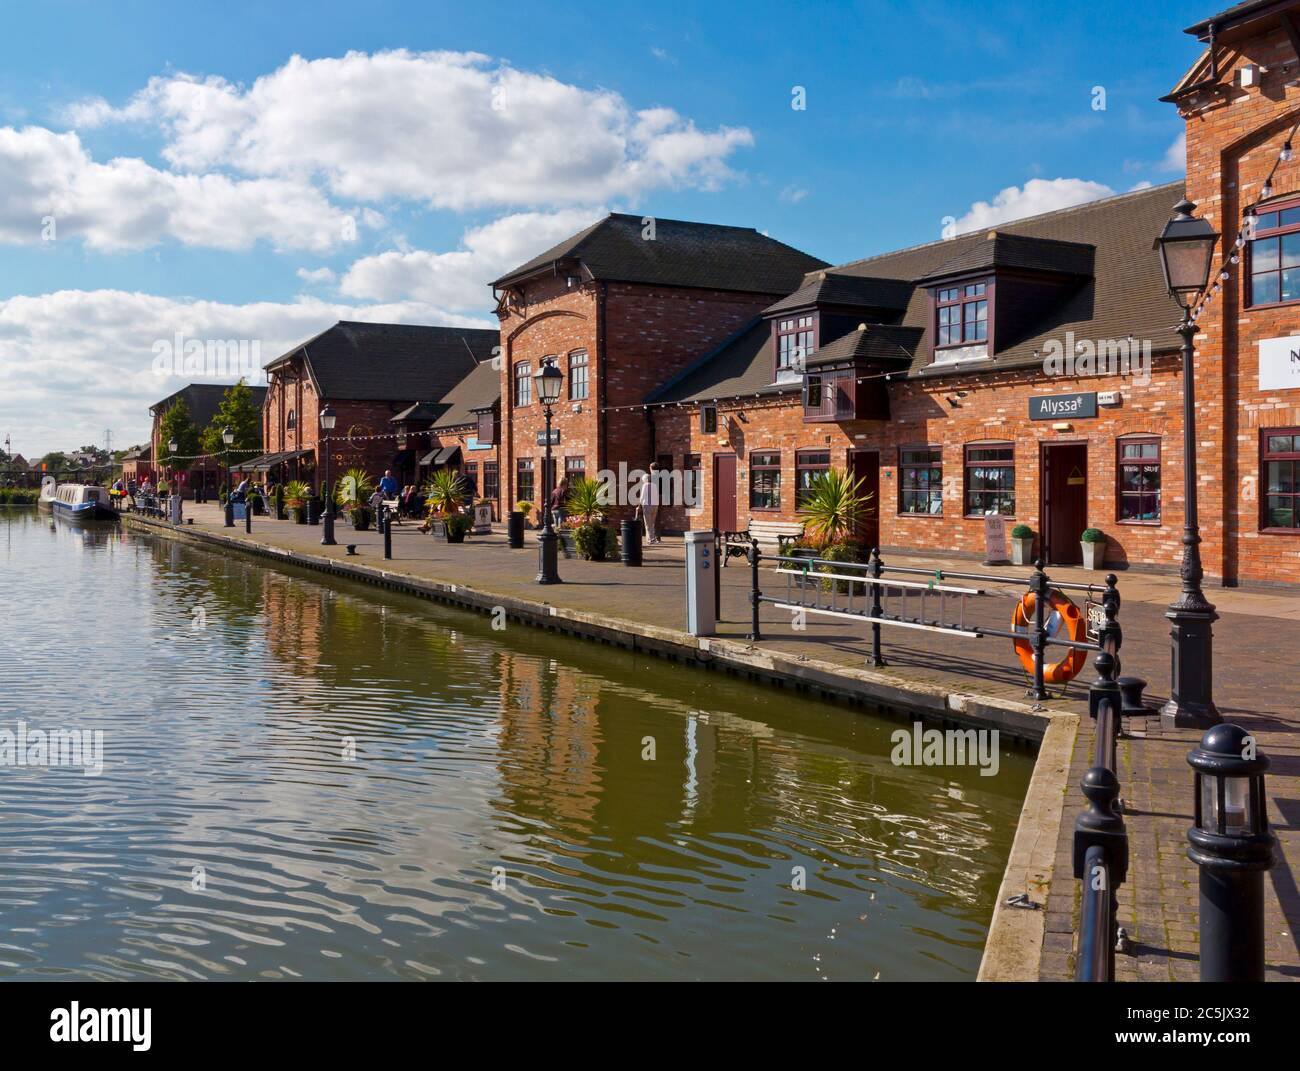 Barton Marina sur le canal Trent et Mersey dans le Staffordshire Angleterre. Banque D'Images